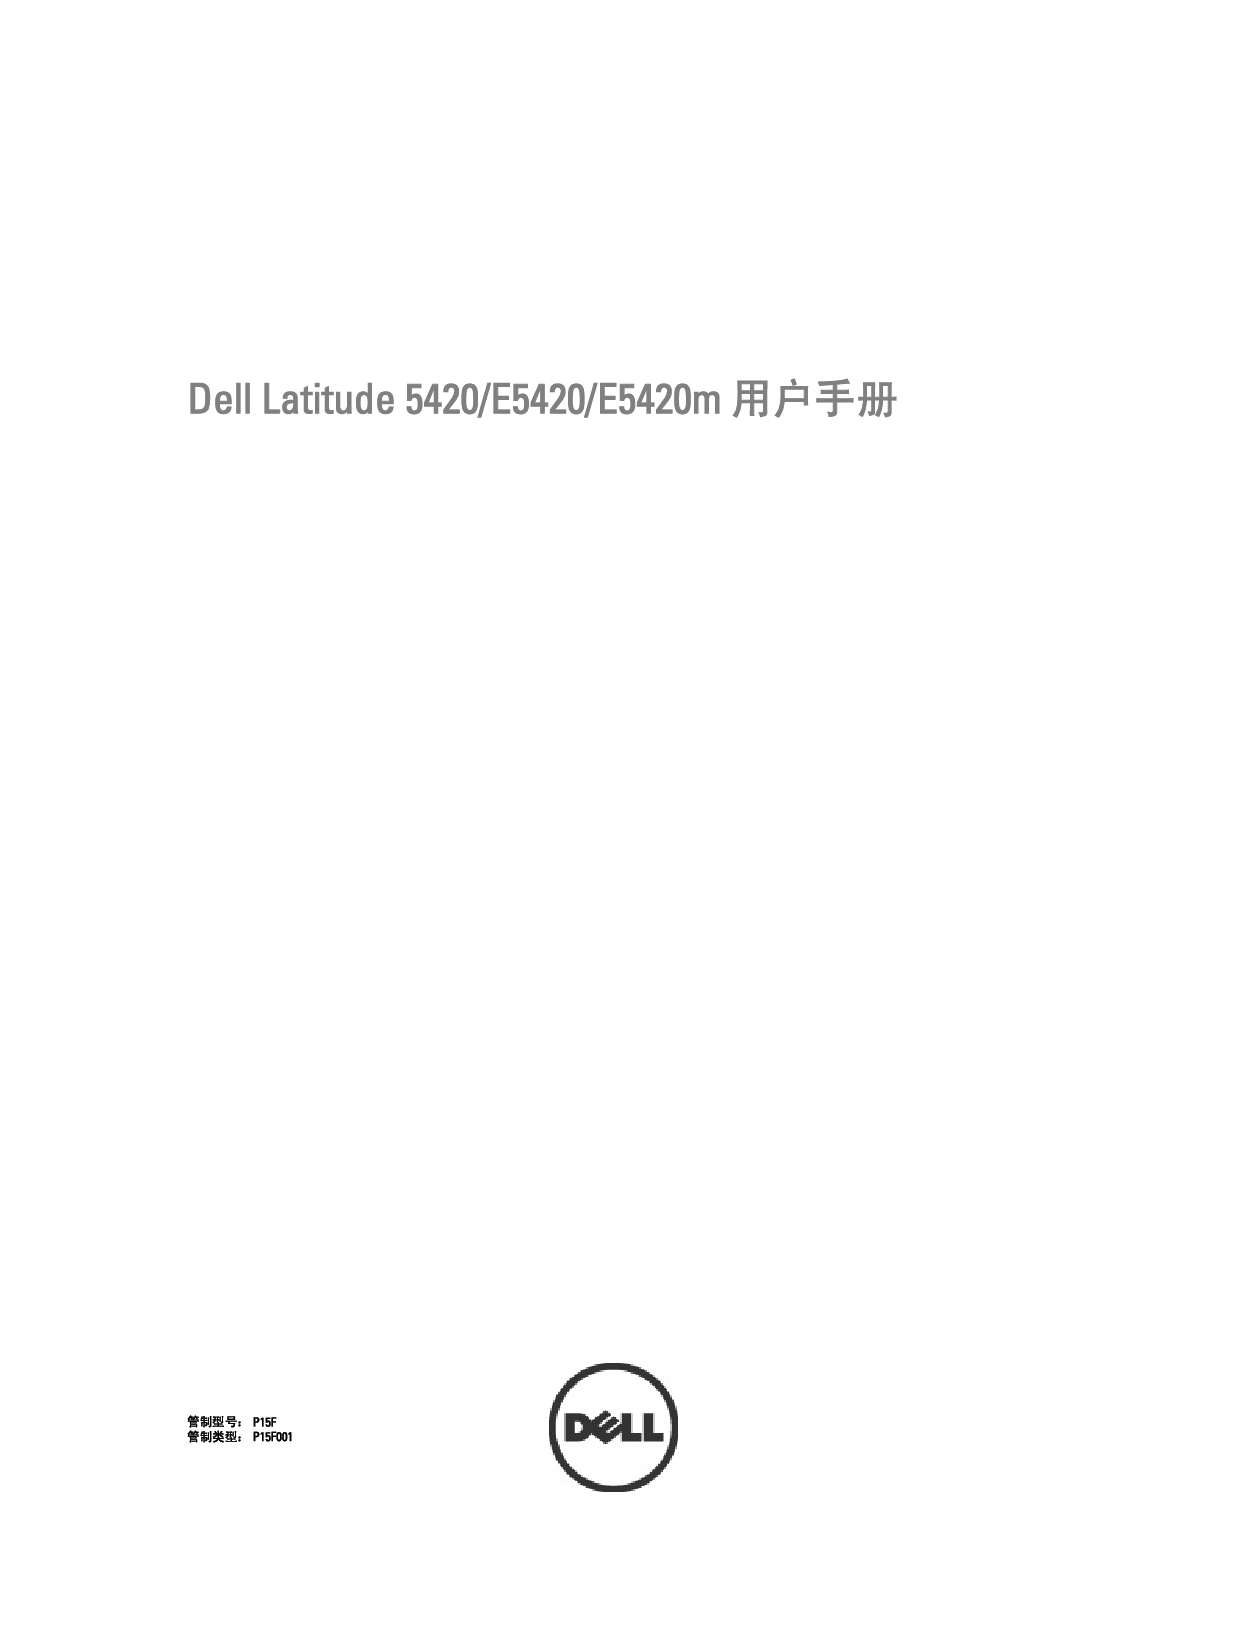 戴尔 Dell Latitude 5420 用户手册 封面